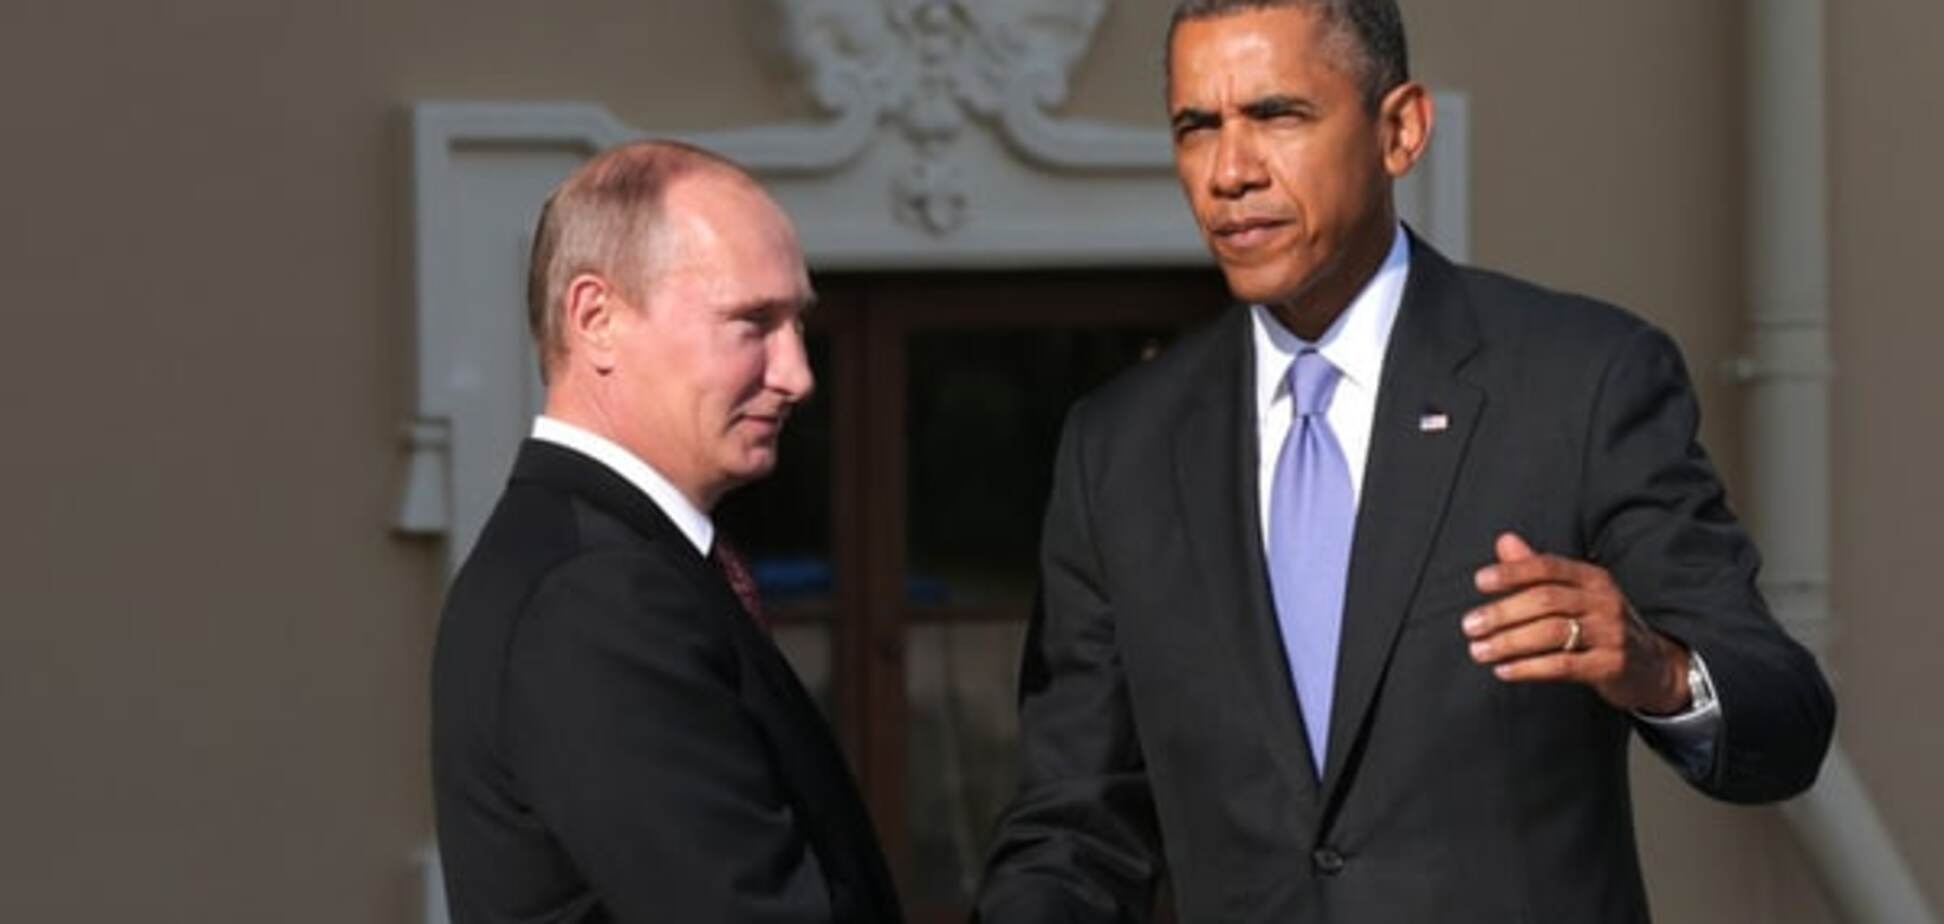 Обама на встрече с Путиным будет вести себя, как психиатр - Боровой